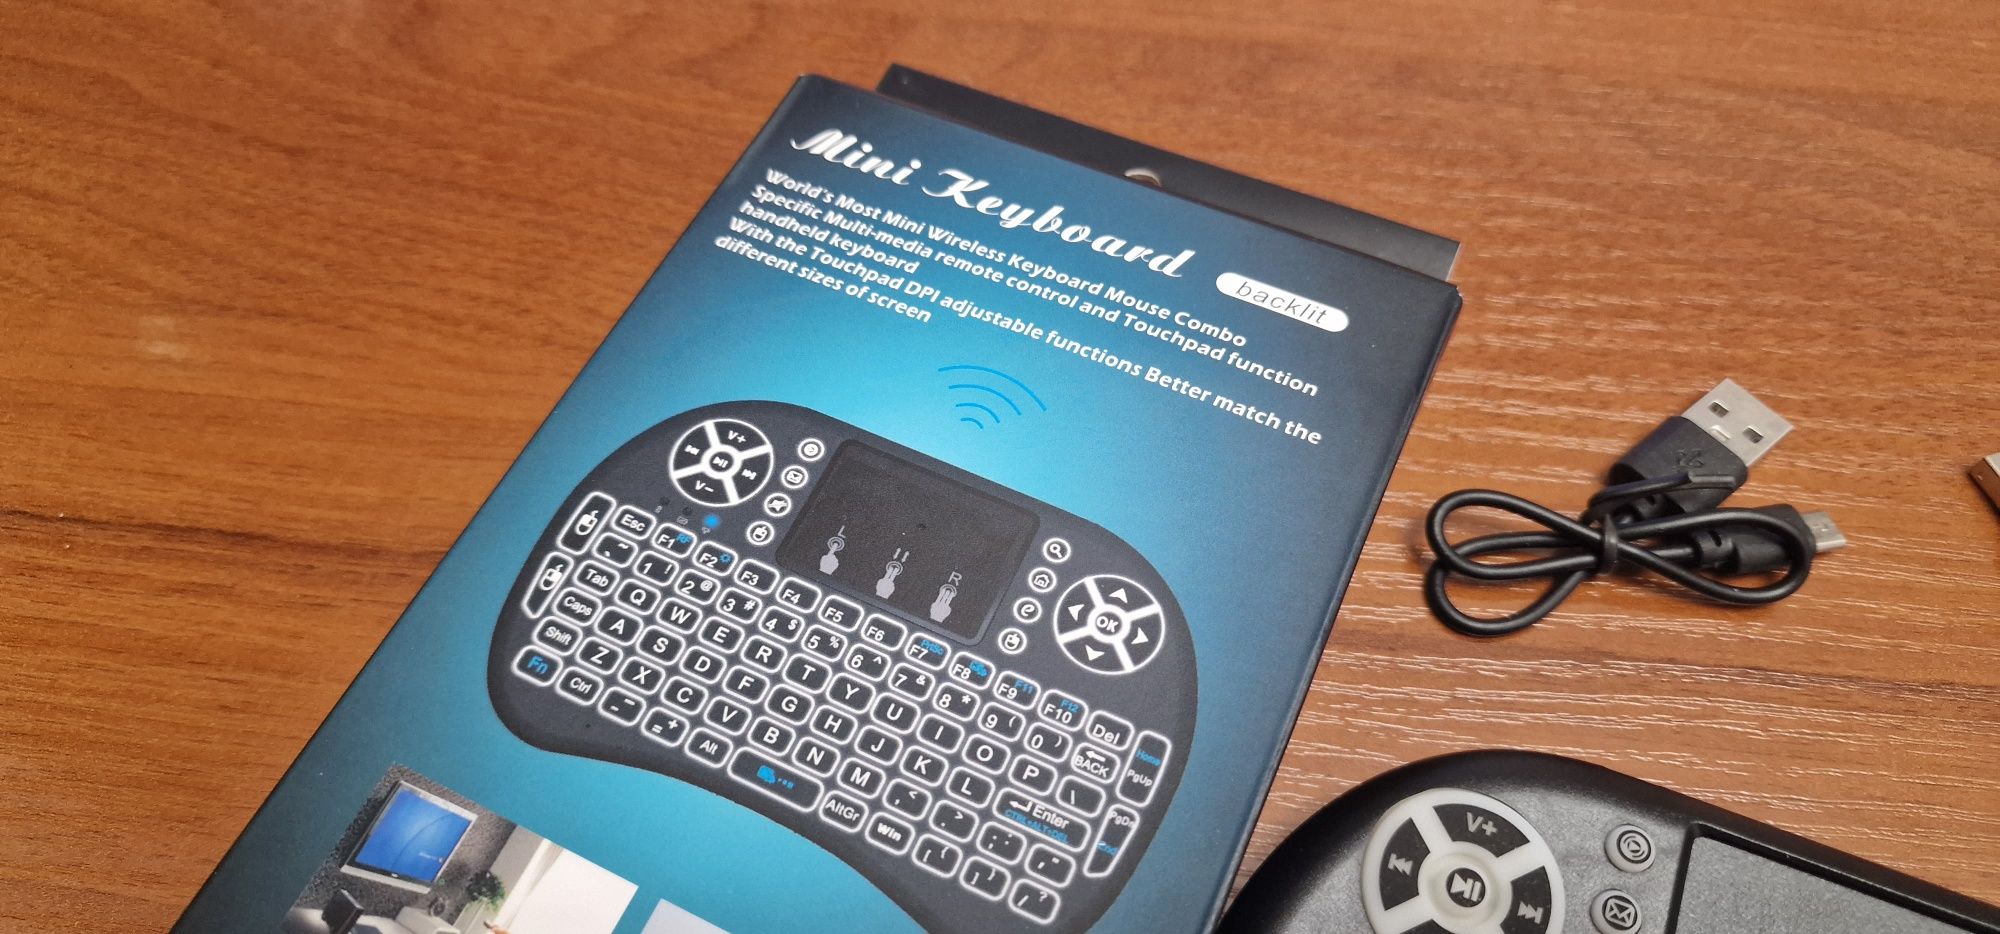 Mini Keyboard Mini klawiatura do Smart TV PC Tablets